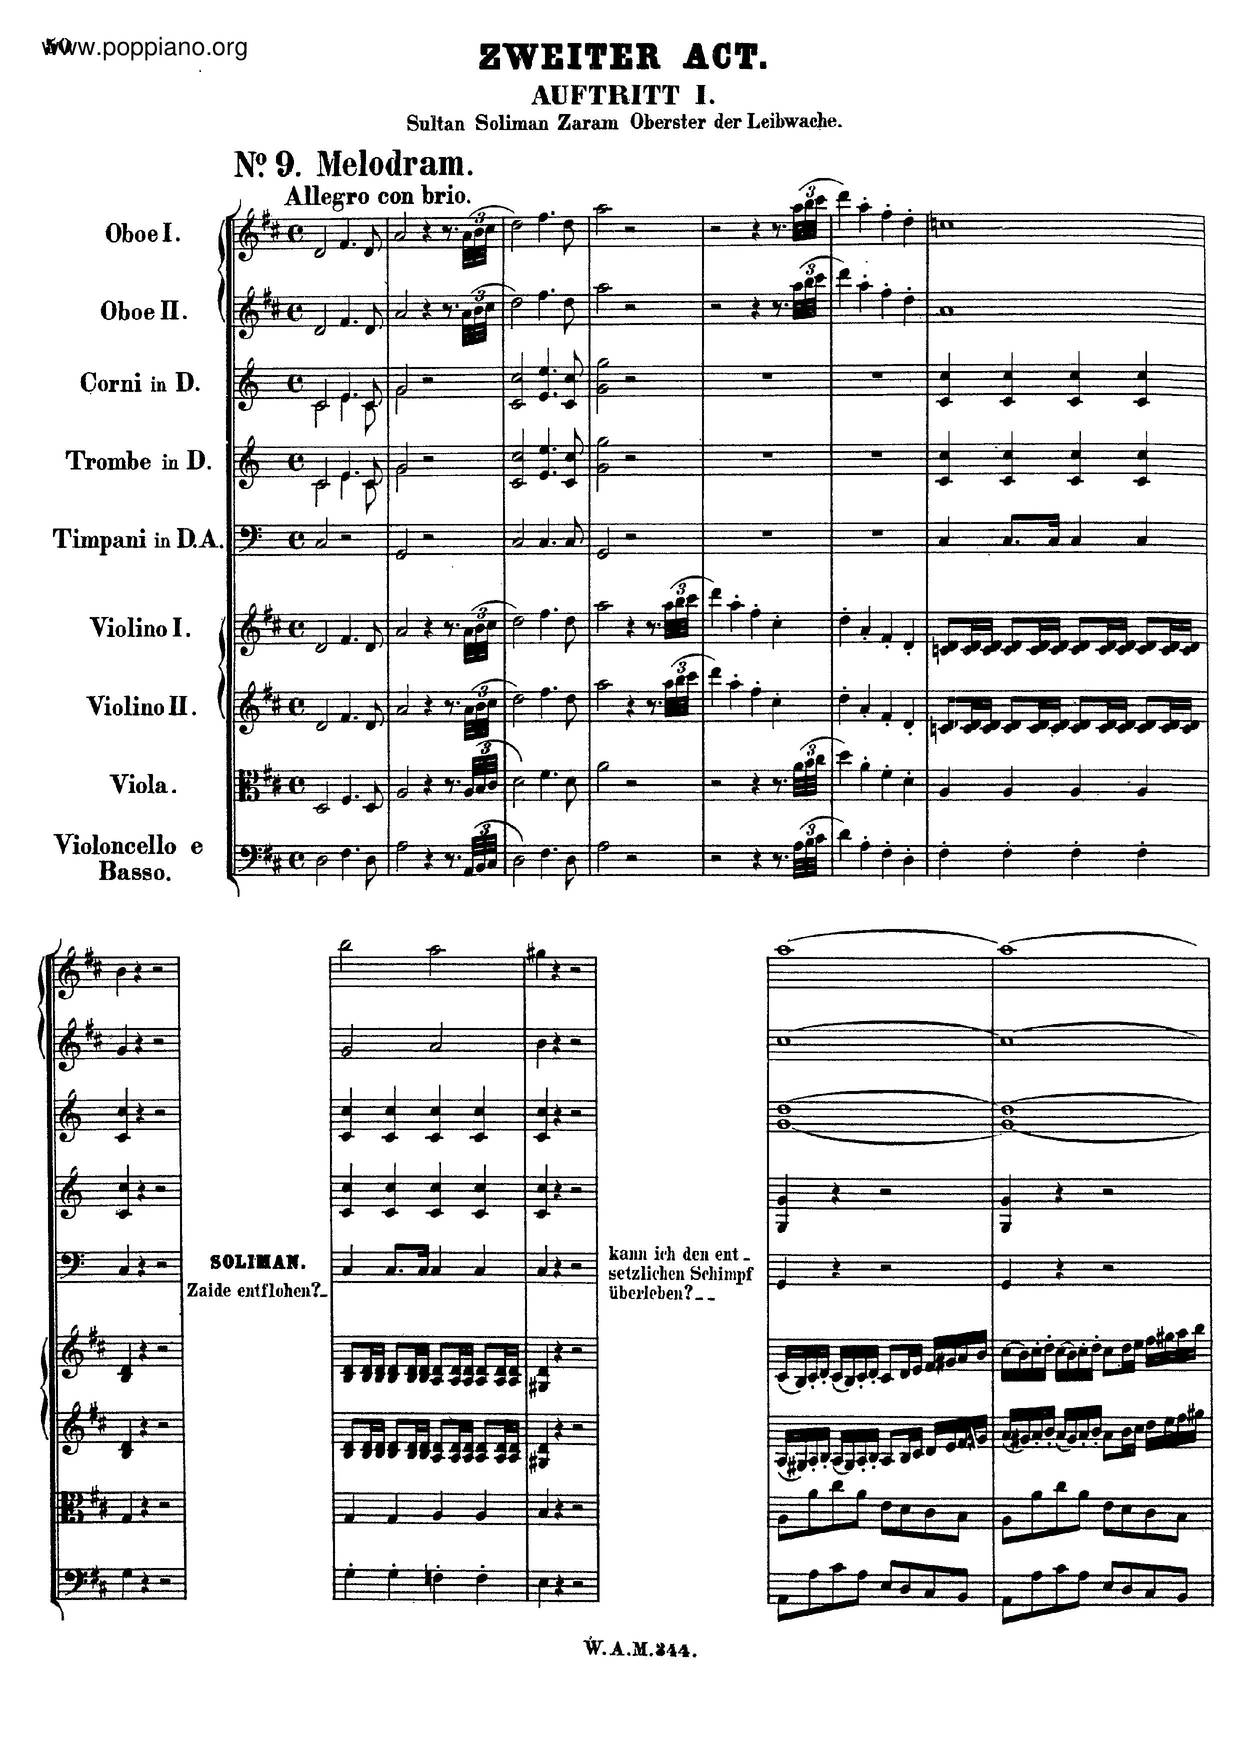 Zaide, K. 344/336Bピアノ譜